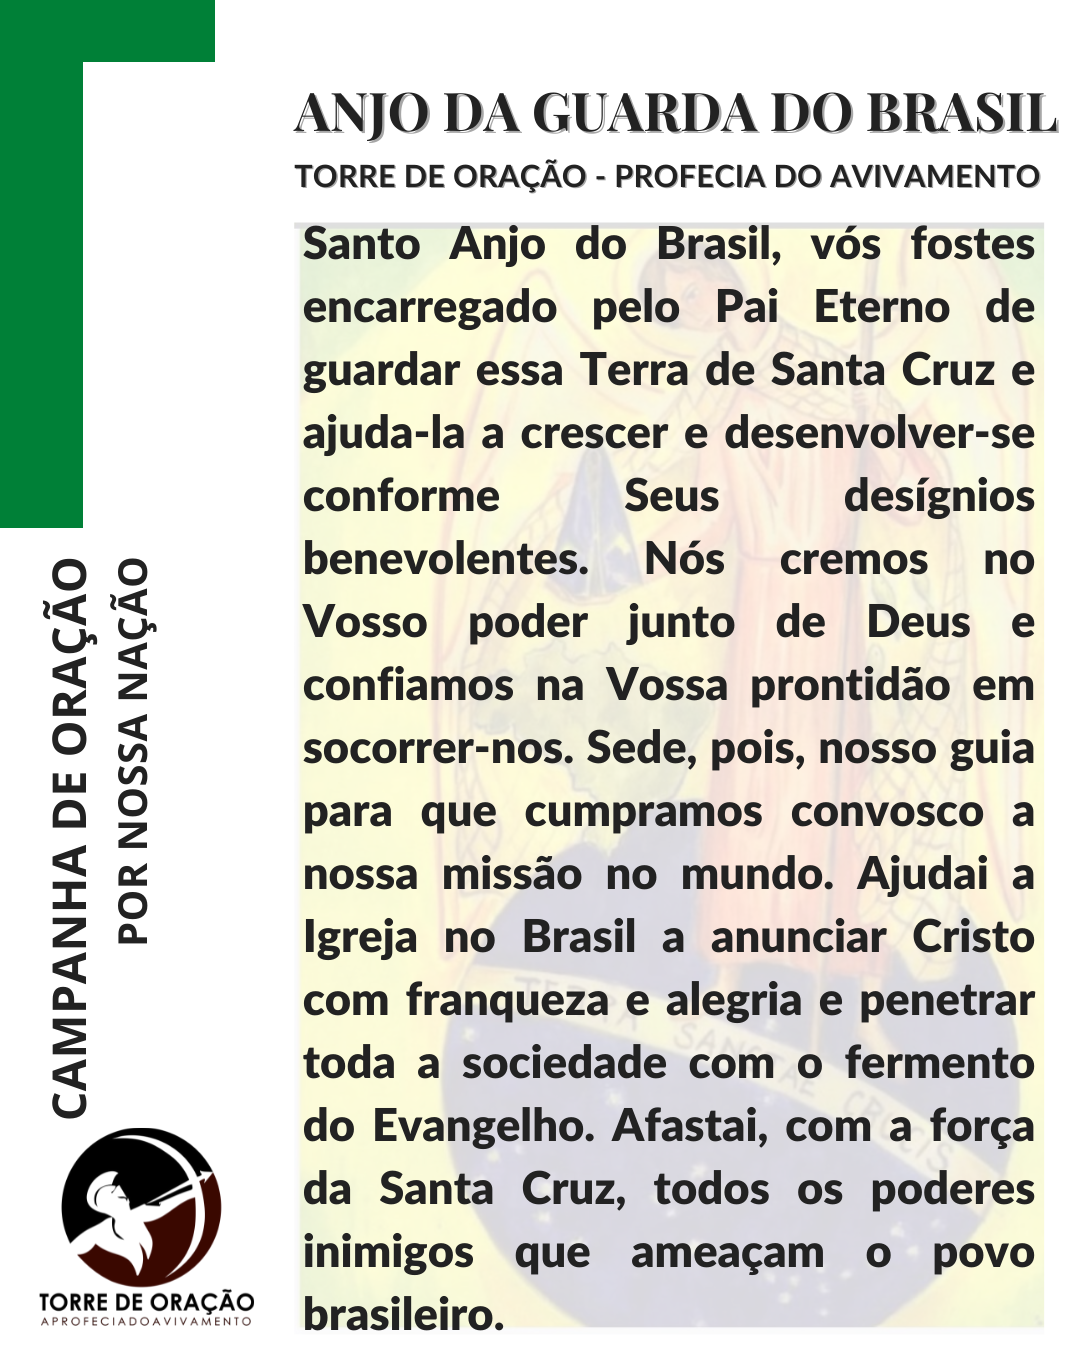 Anjo da Guarda do Brasil